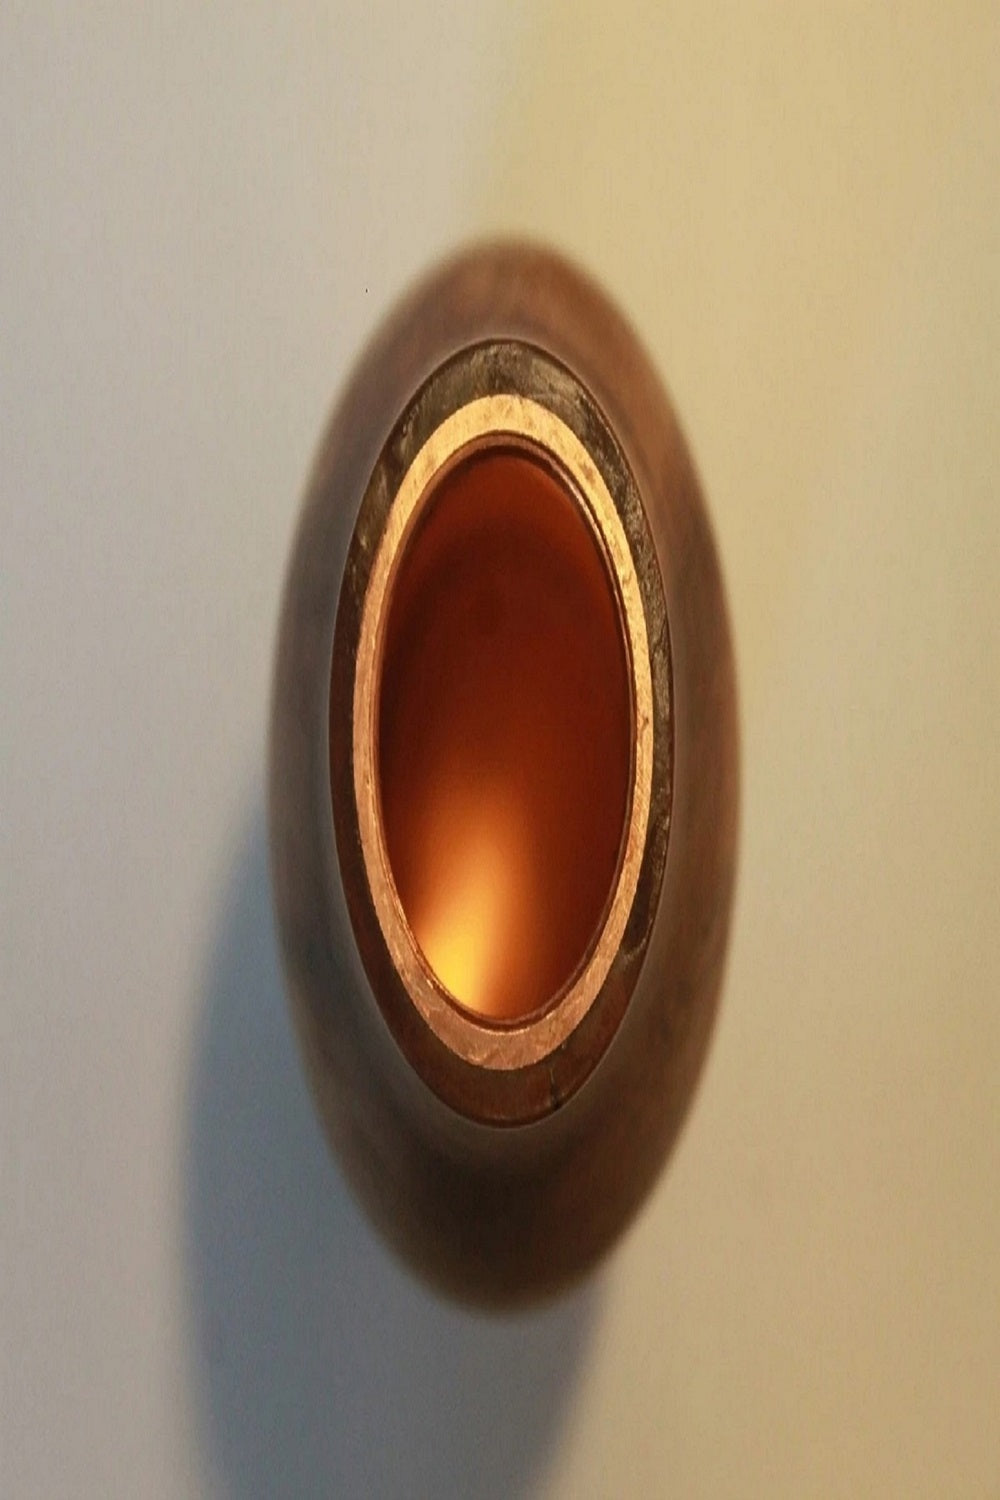 The Wooden Copper Bottle Neem Wood - 500 ml